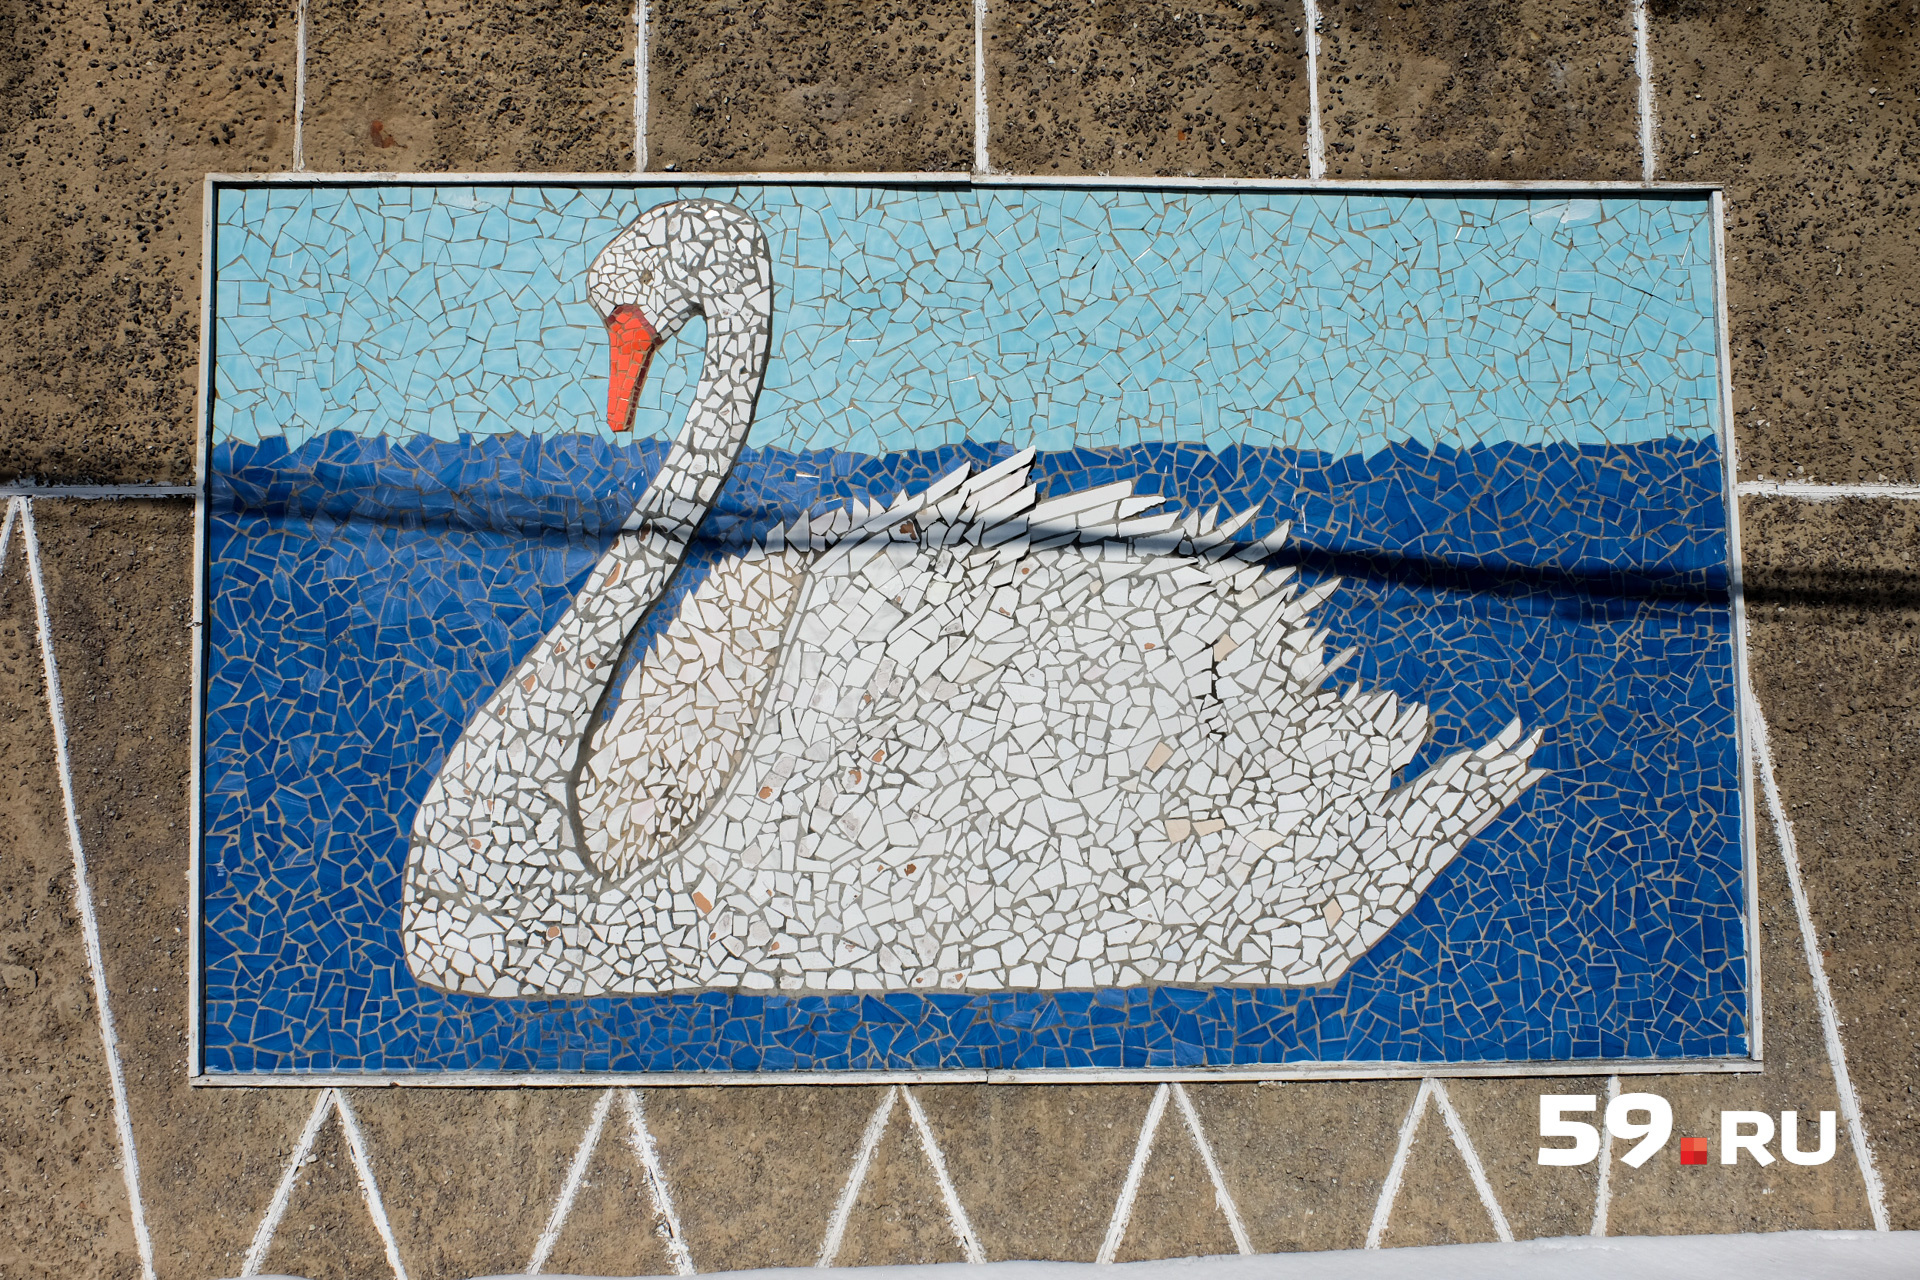 Мозаика с белым лебедем. Этот символ здесь много где встречается